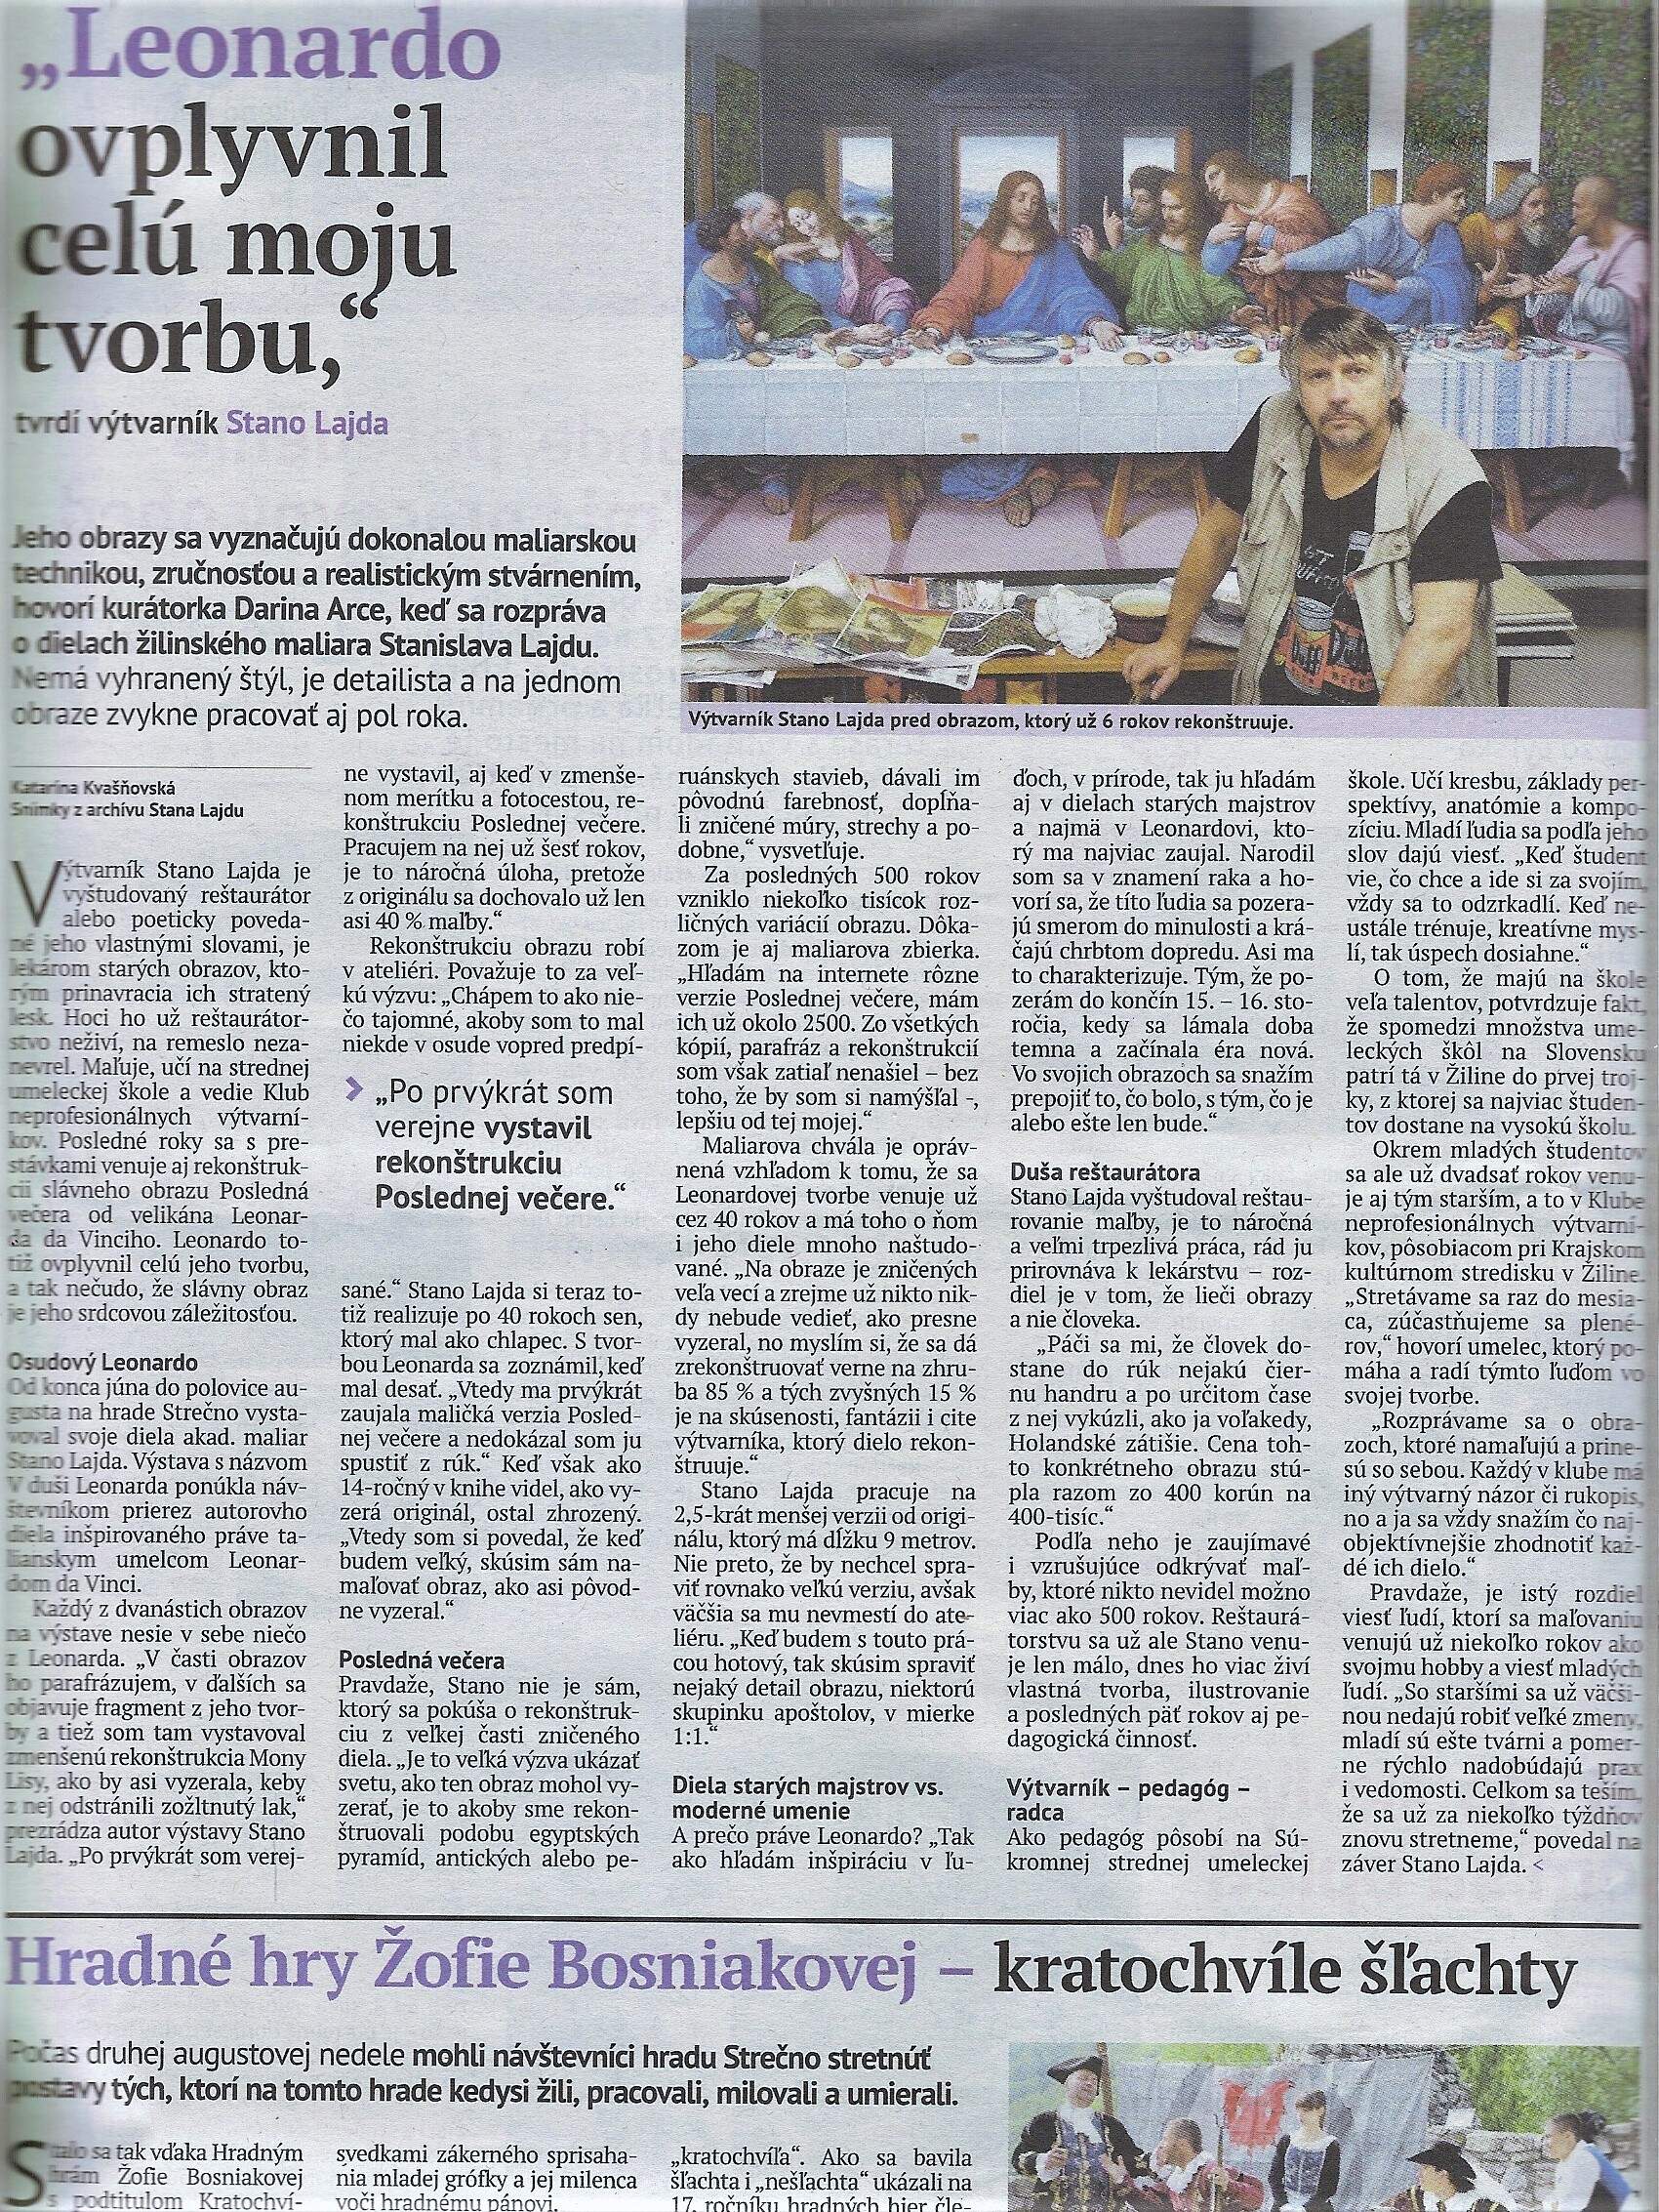 2014, 19. aug., Žilinský večerník, roč. 24, č. 34, str. 10